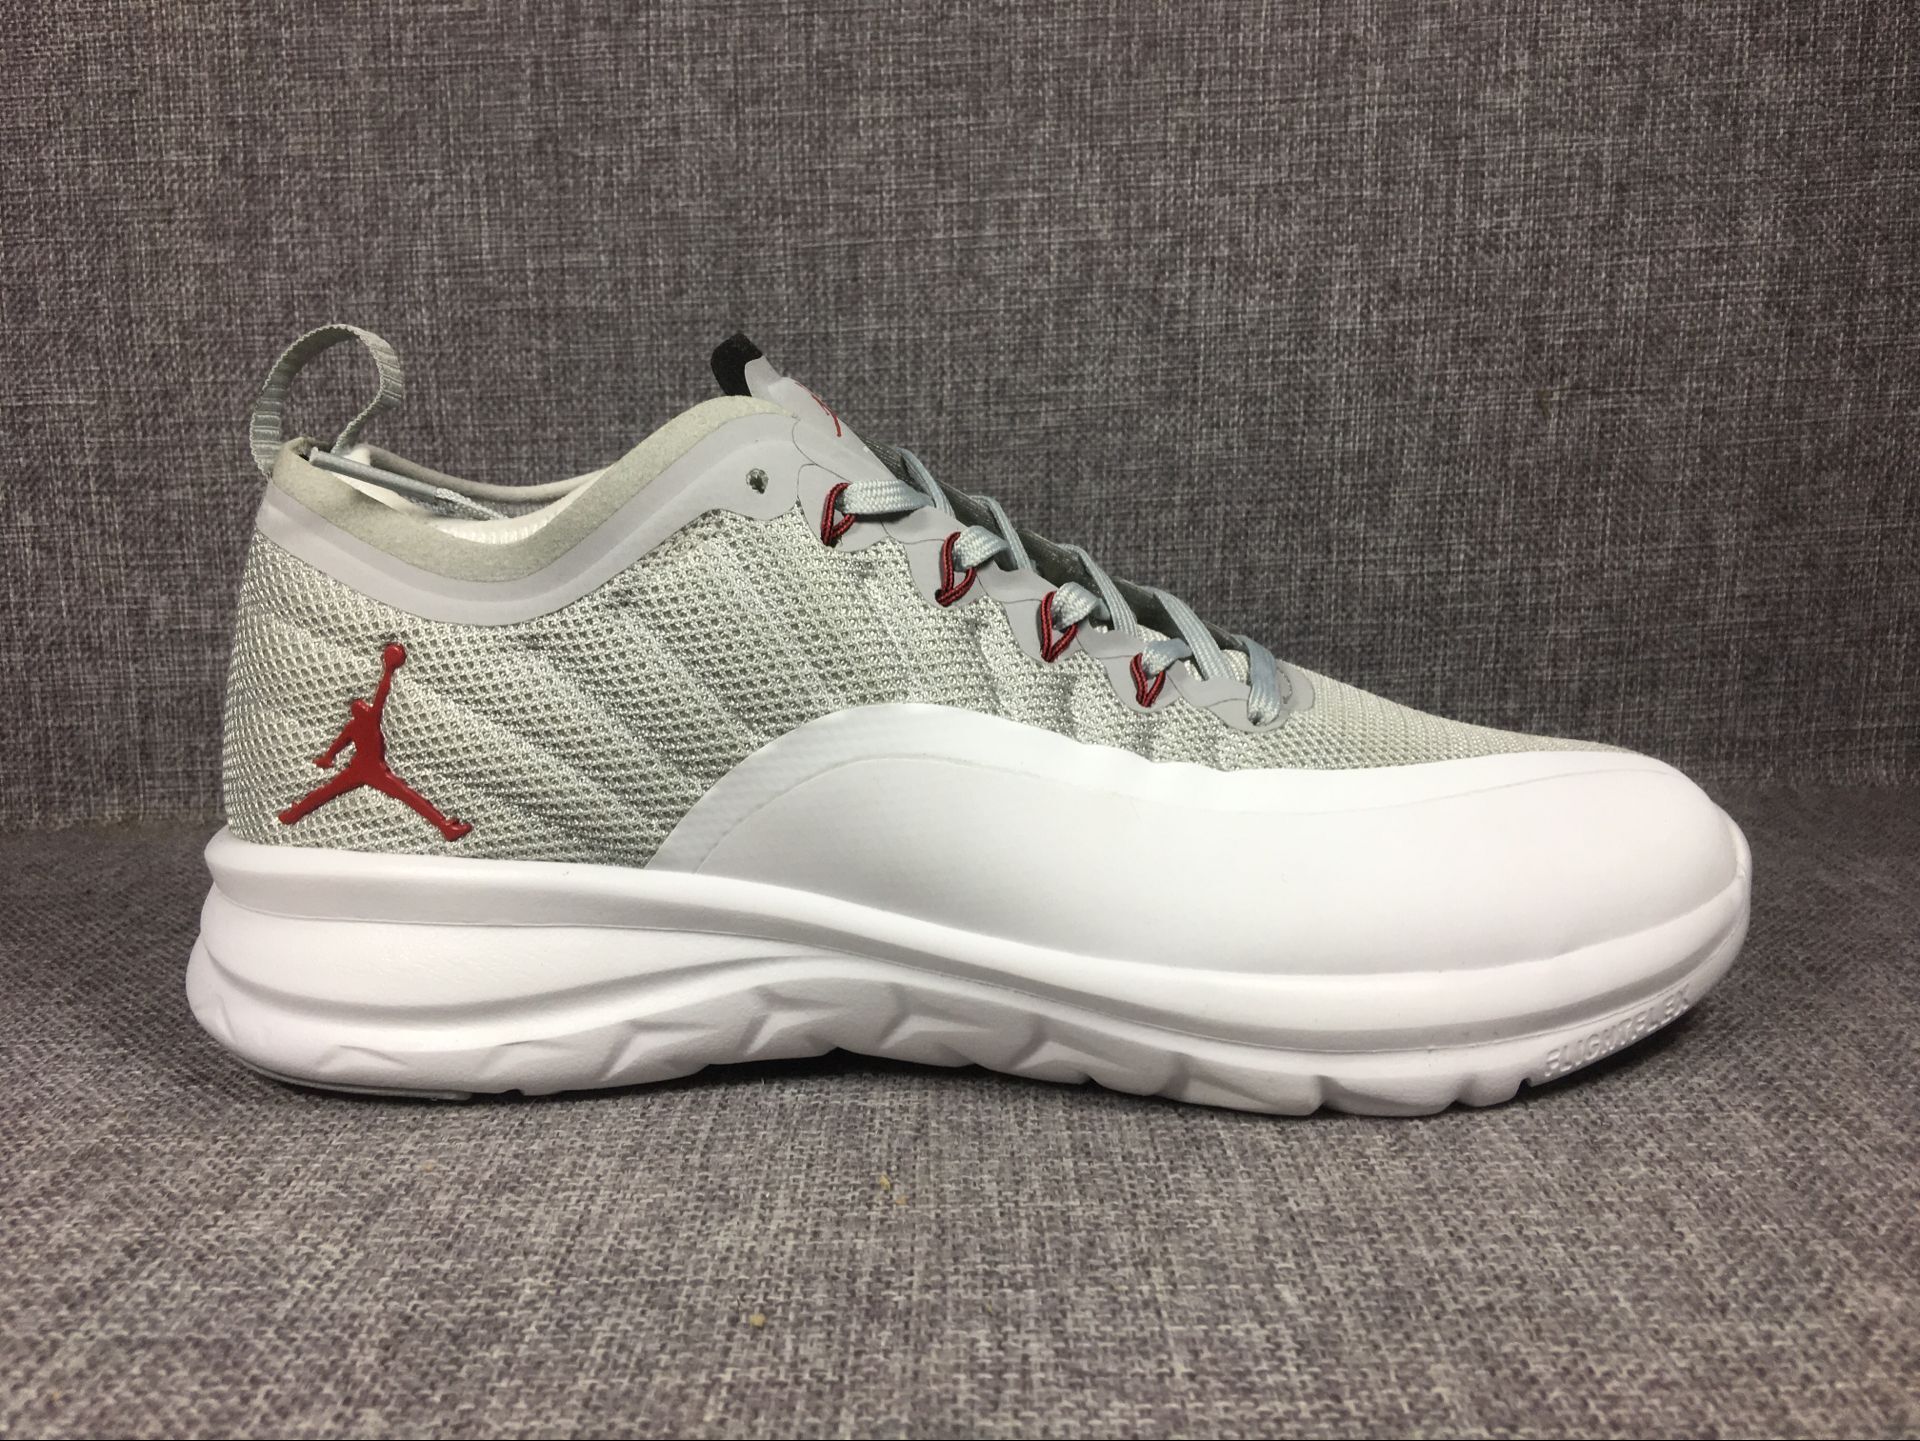 Air Jordan 12.5 Low Grey White Shoes [18og5417] - $75.00 : Original